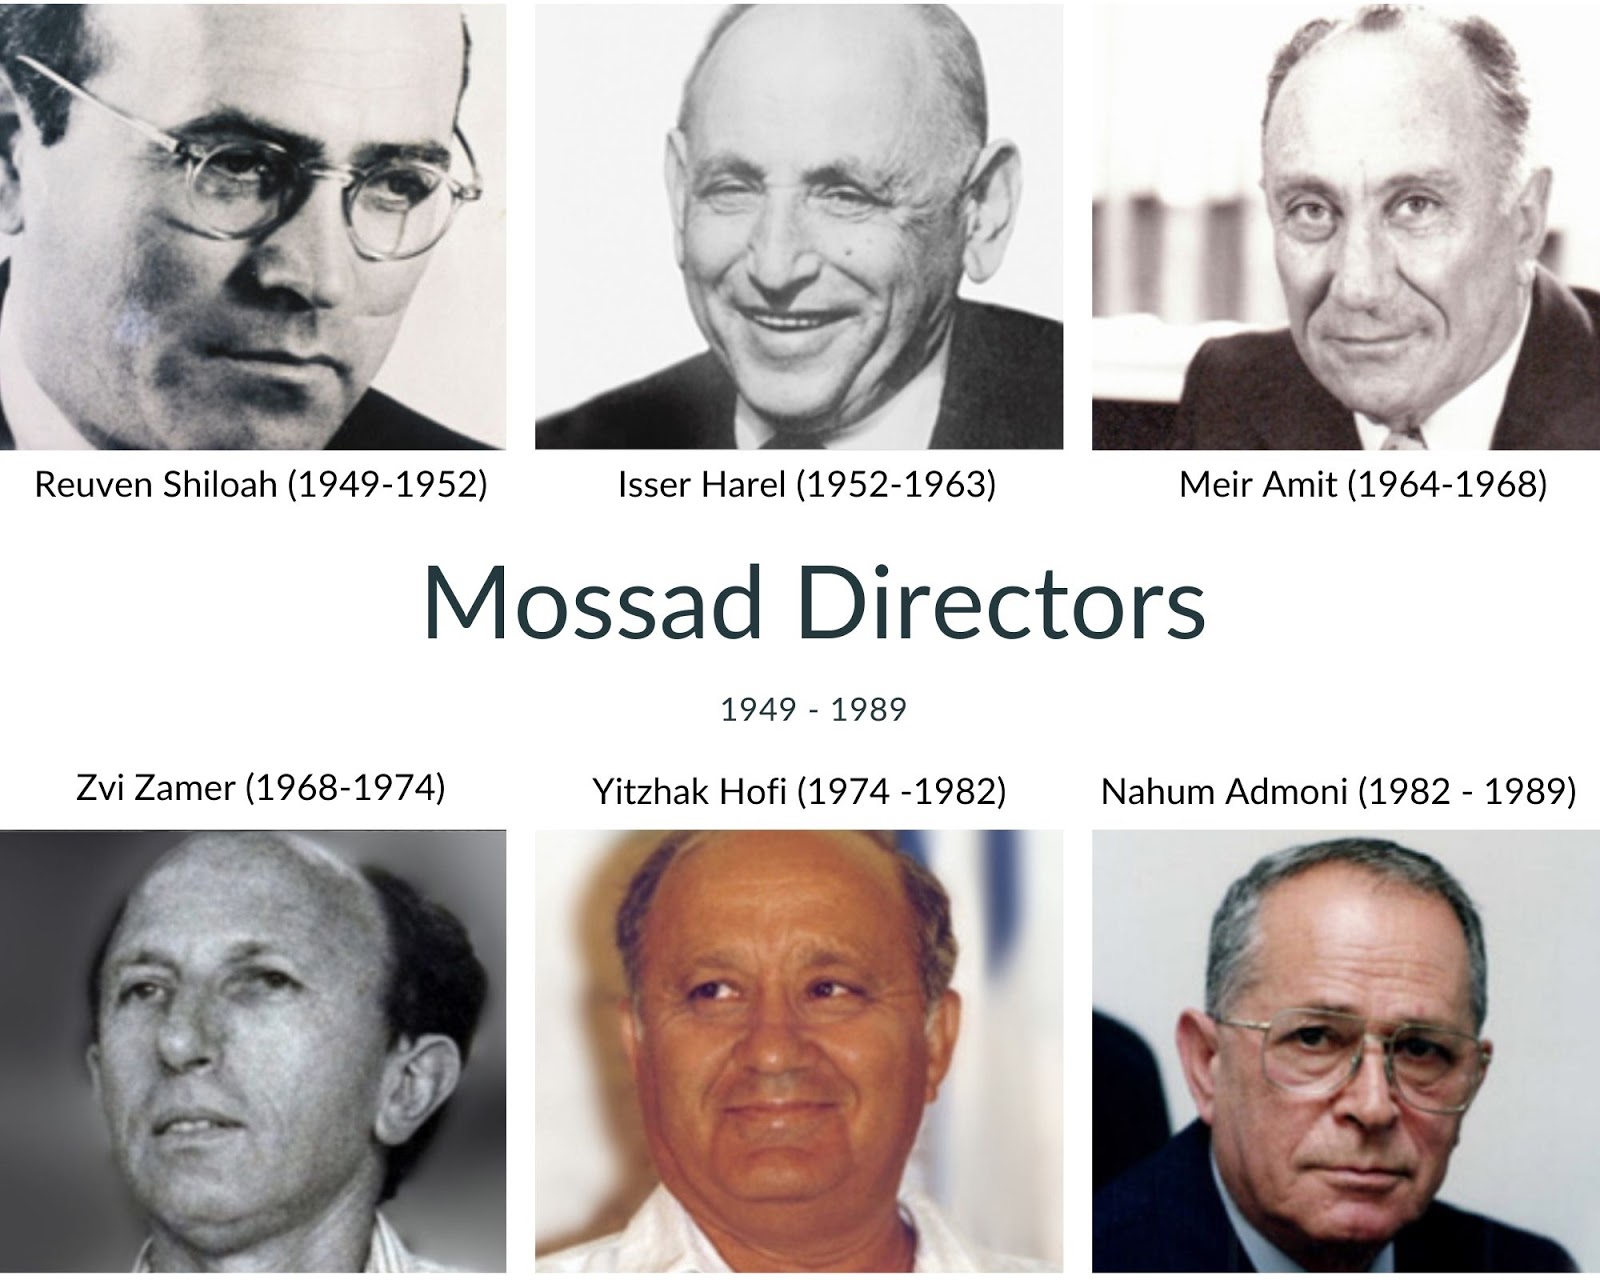 Mossad Directors